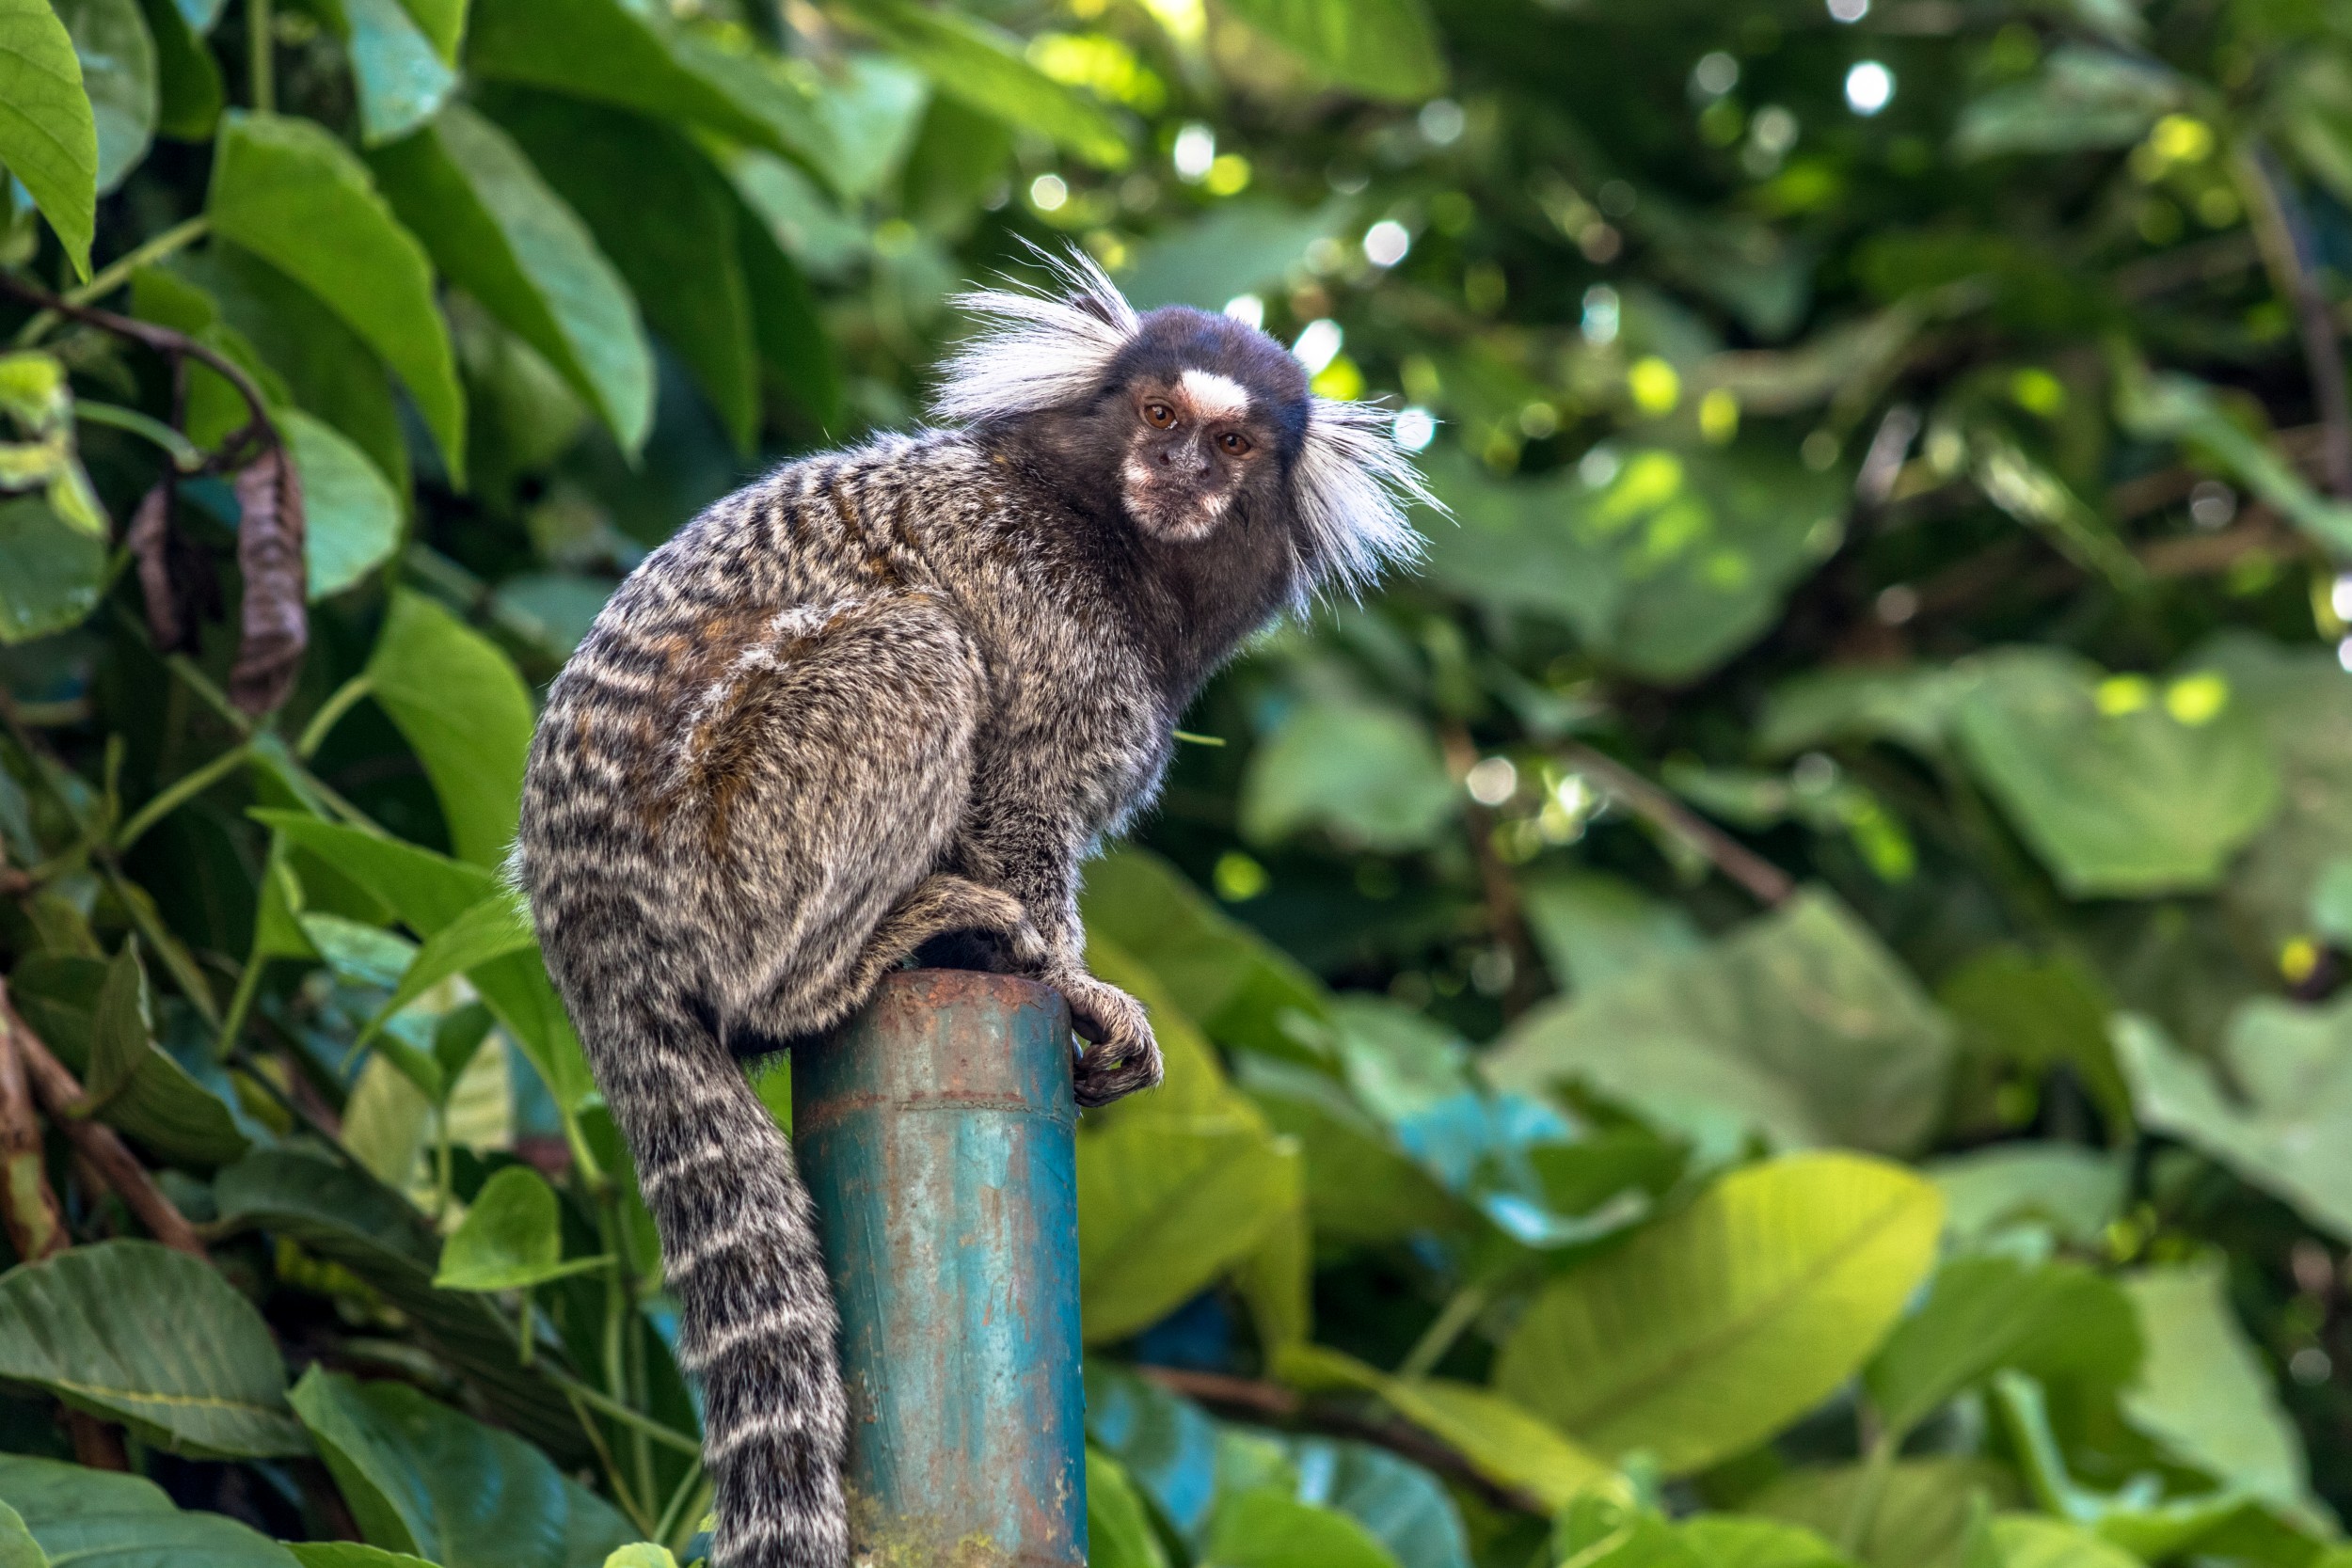 Macaco sagui: saiba como criar a espécie no Brasil